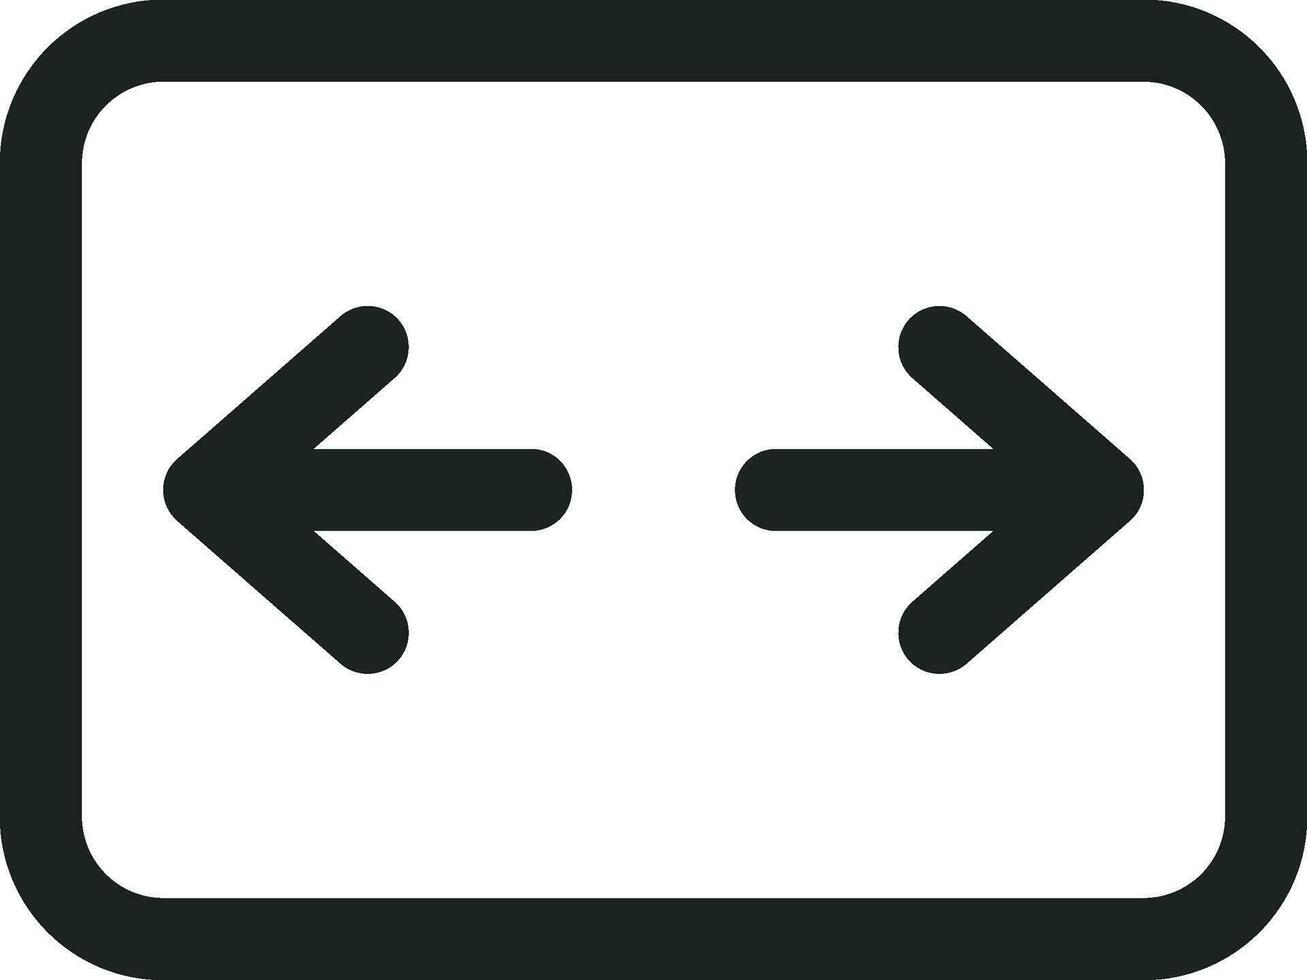 fri översikt ikon eller symbol Bra använda sig av för du design vektor design element